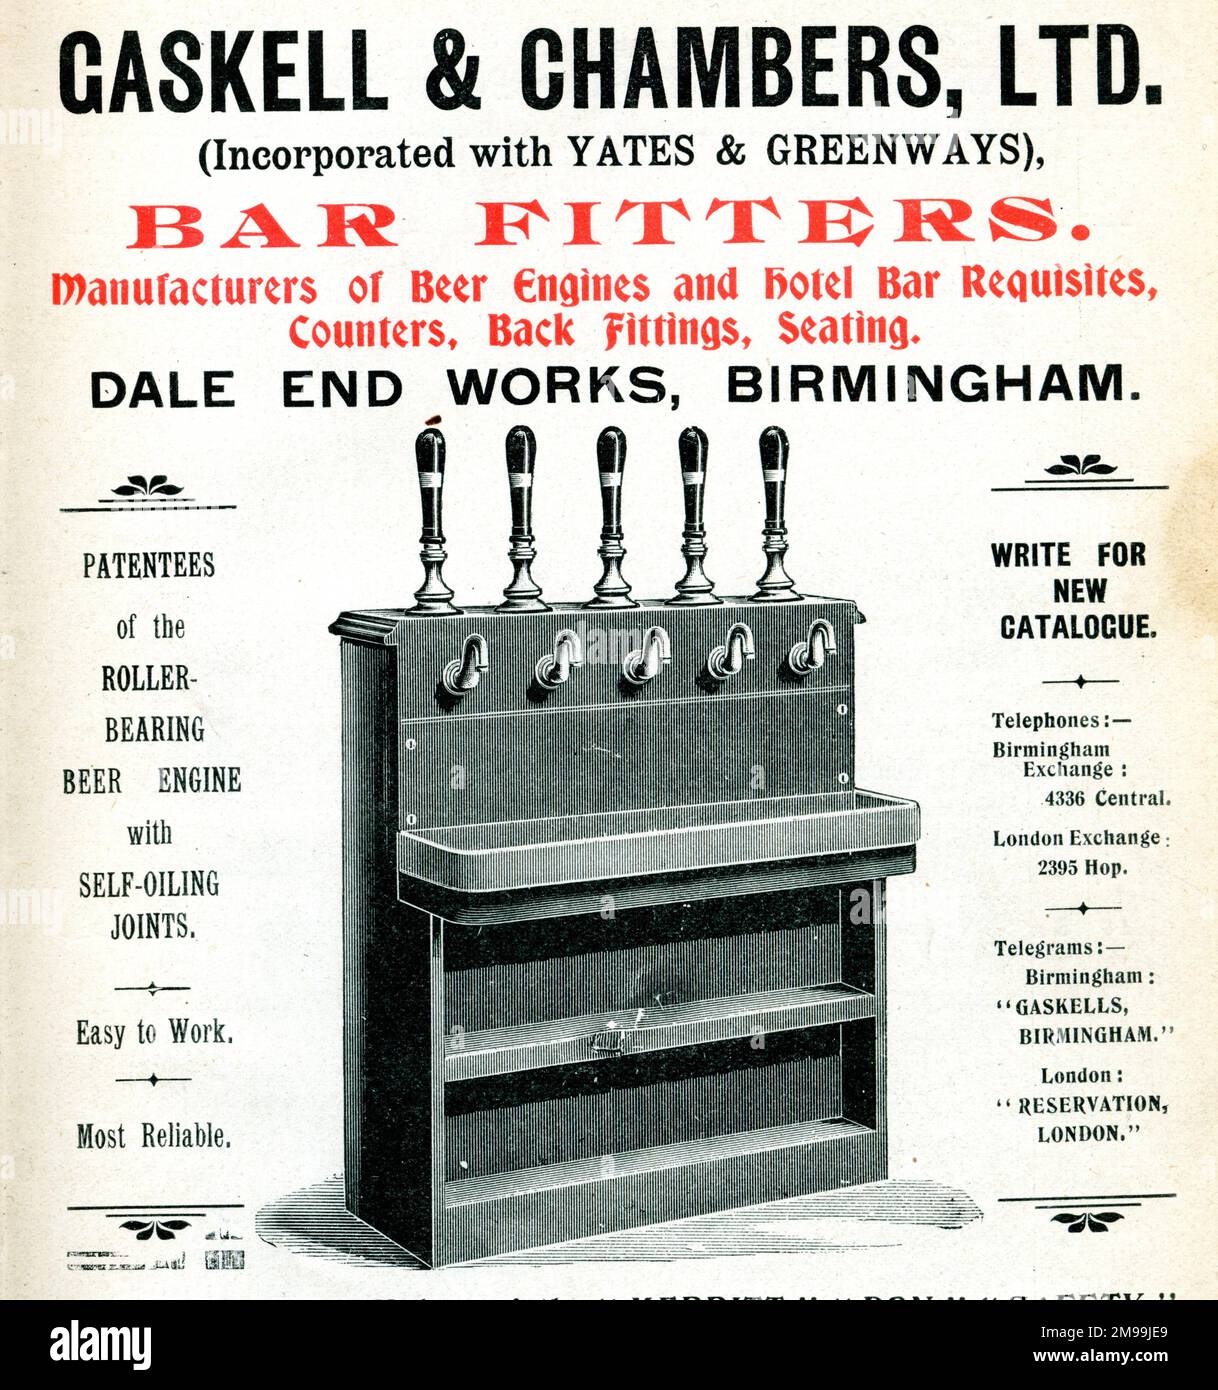 Werbung für Gaskell & Chambers Ltd (mit Yates & Greenways gegründet), Bar Monteurs, Hersteller von Biermaschinen und Hotel Bar Requisites, Counters, Back Fittings, Sitzplätze. Dale End Arbeitet, Birmingham. Stockfoto